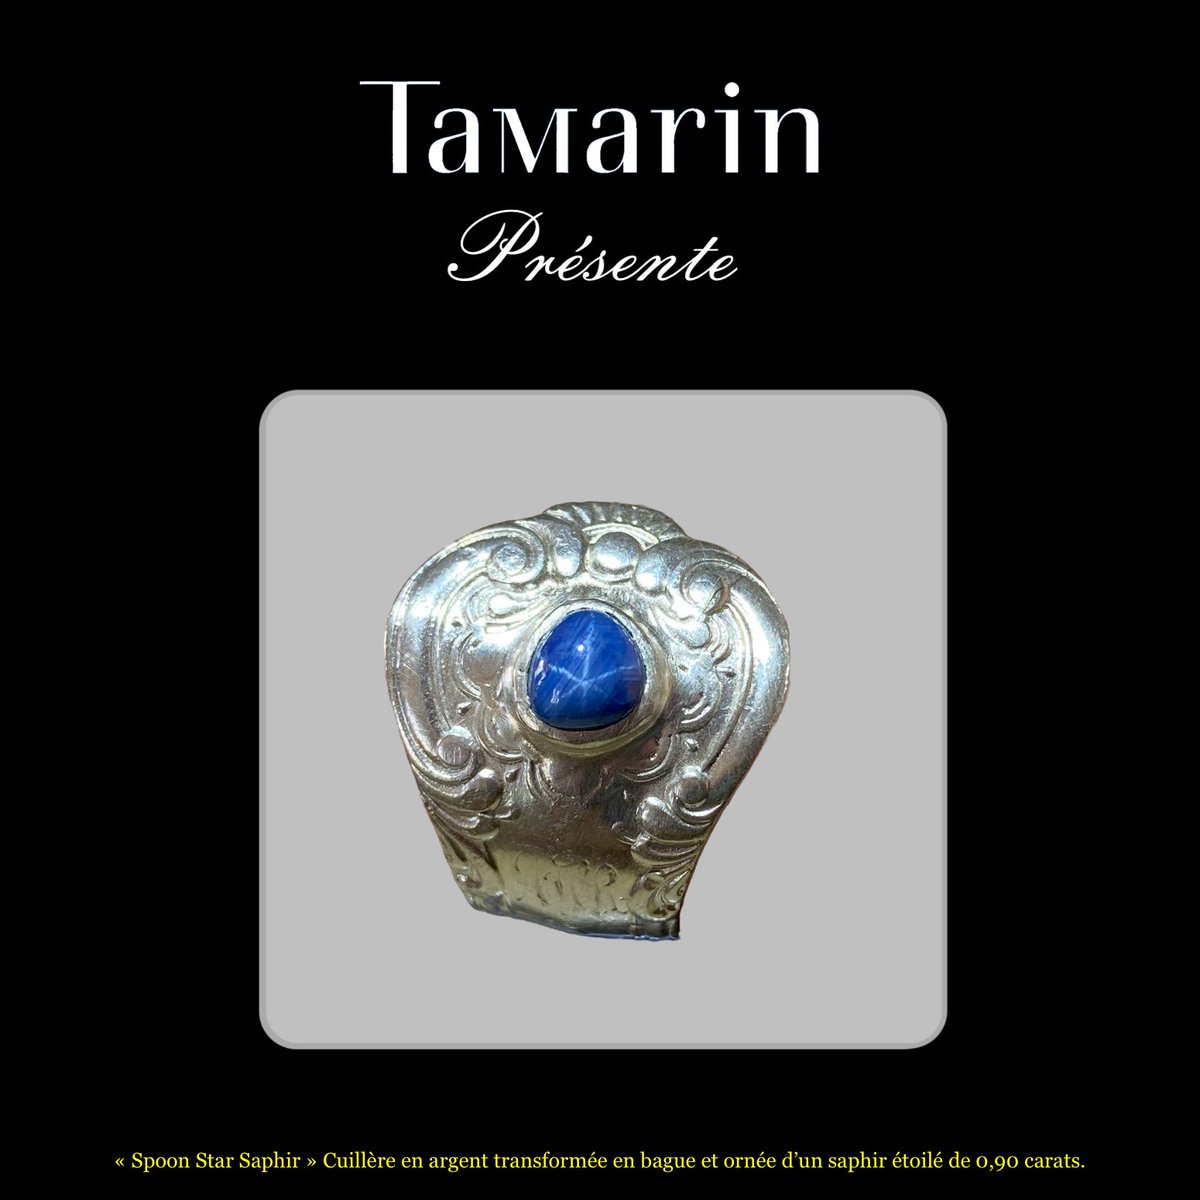 Découvrez Tamarin et ses bijoux uniques. 
Notre dernière création unique : une bague fabriquée à partir d'une cuillère en argent anglaise, ornée d'un magnifique saphir étoilé.
saphir-etoile.com

#luxe #bijouxuniques #savoirfaire #artisan #saphiretoile